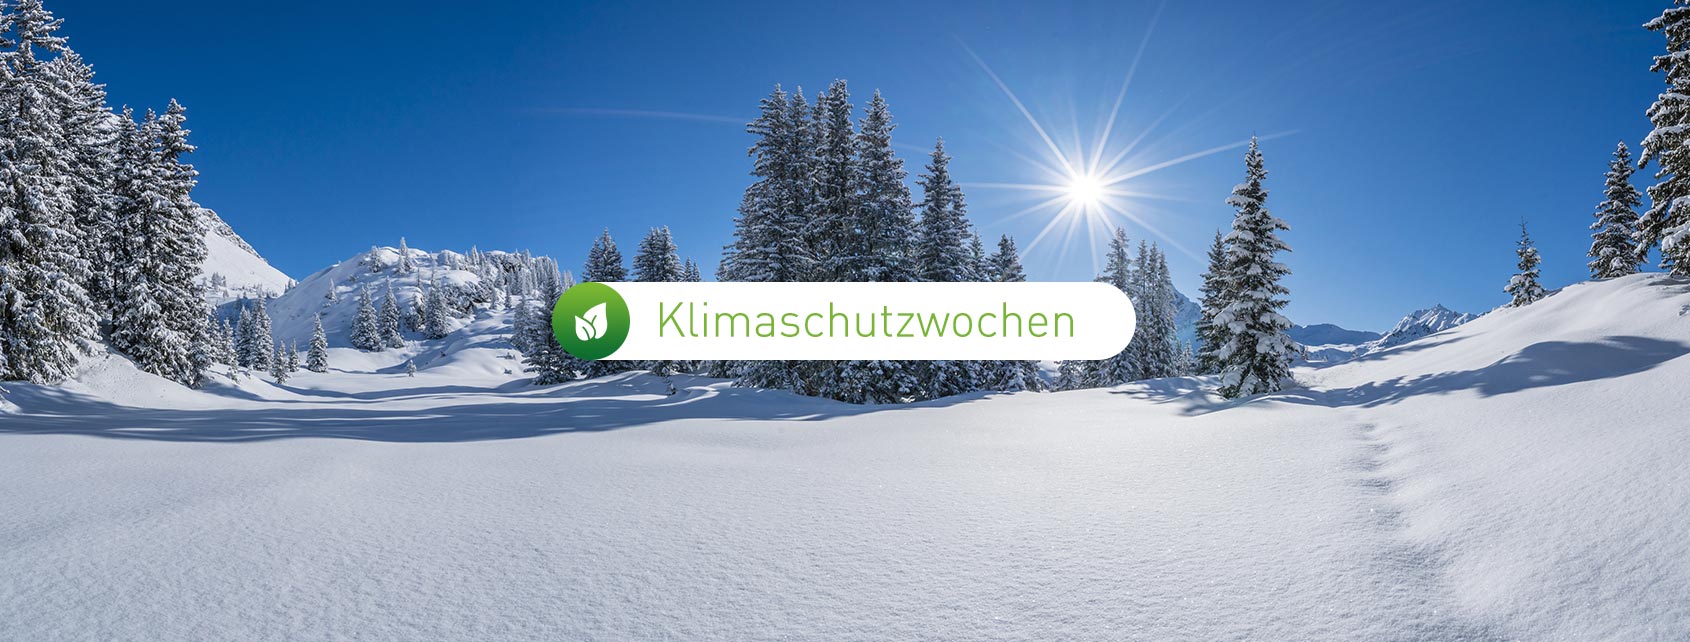 blogheader-klimaschutzwochen-2021-winter-1690x642px